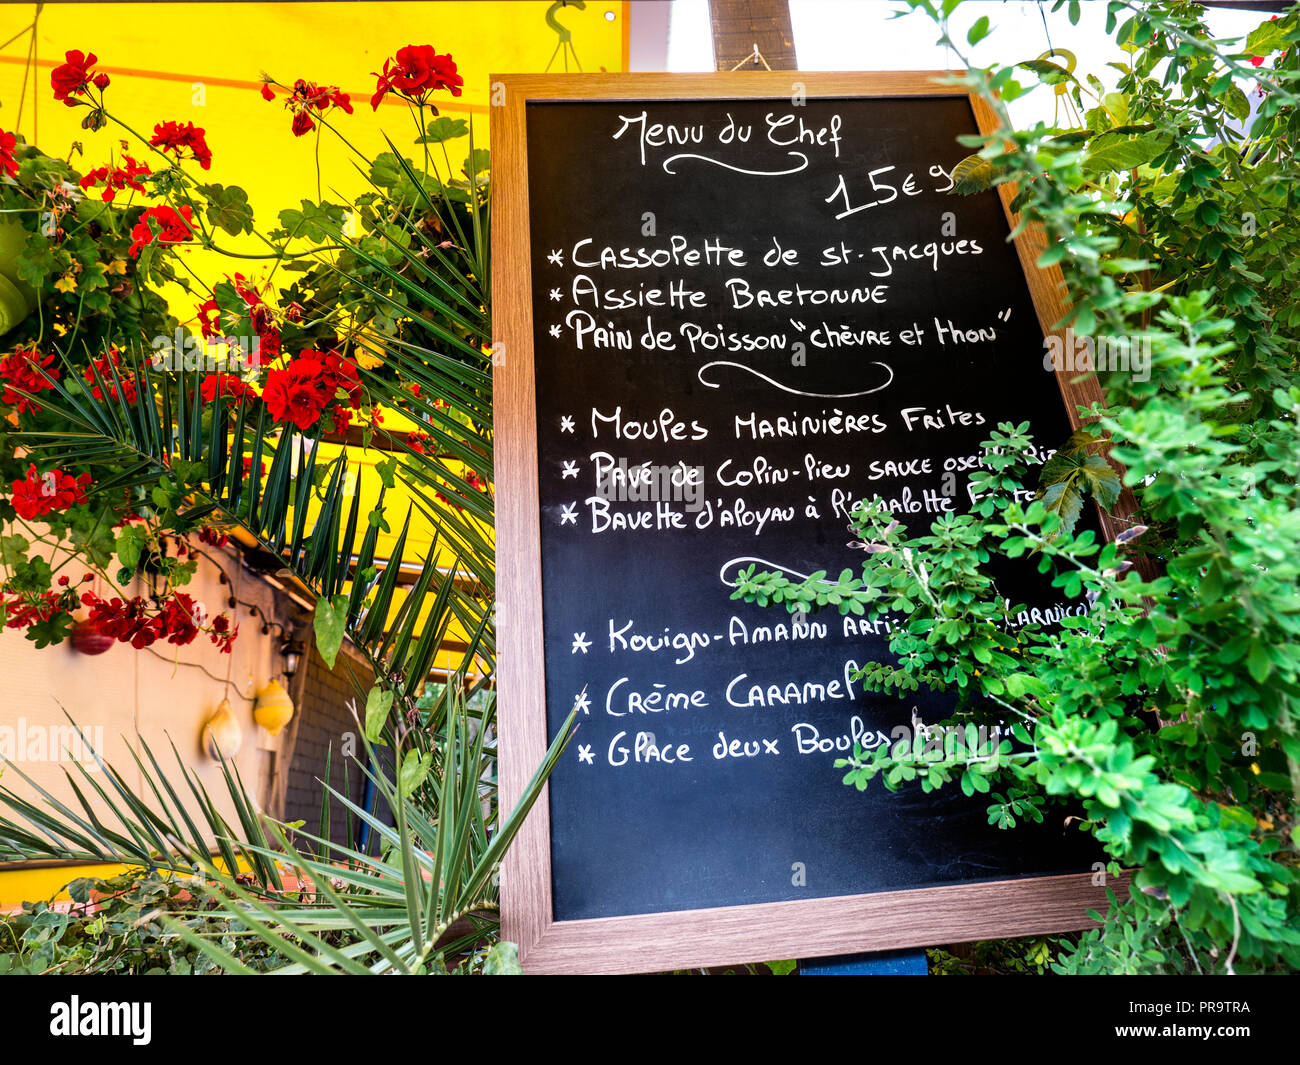 Französische florale Tafel Menü des Tages Menu du Chef" mit lokalen Spezialitäten außerhalb der typischen rustikalen französischen Restaurant in Concarneau Bretagne Frankreich Stockfoto